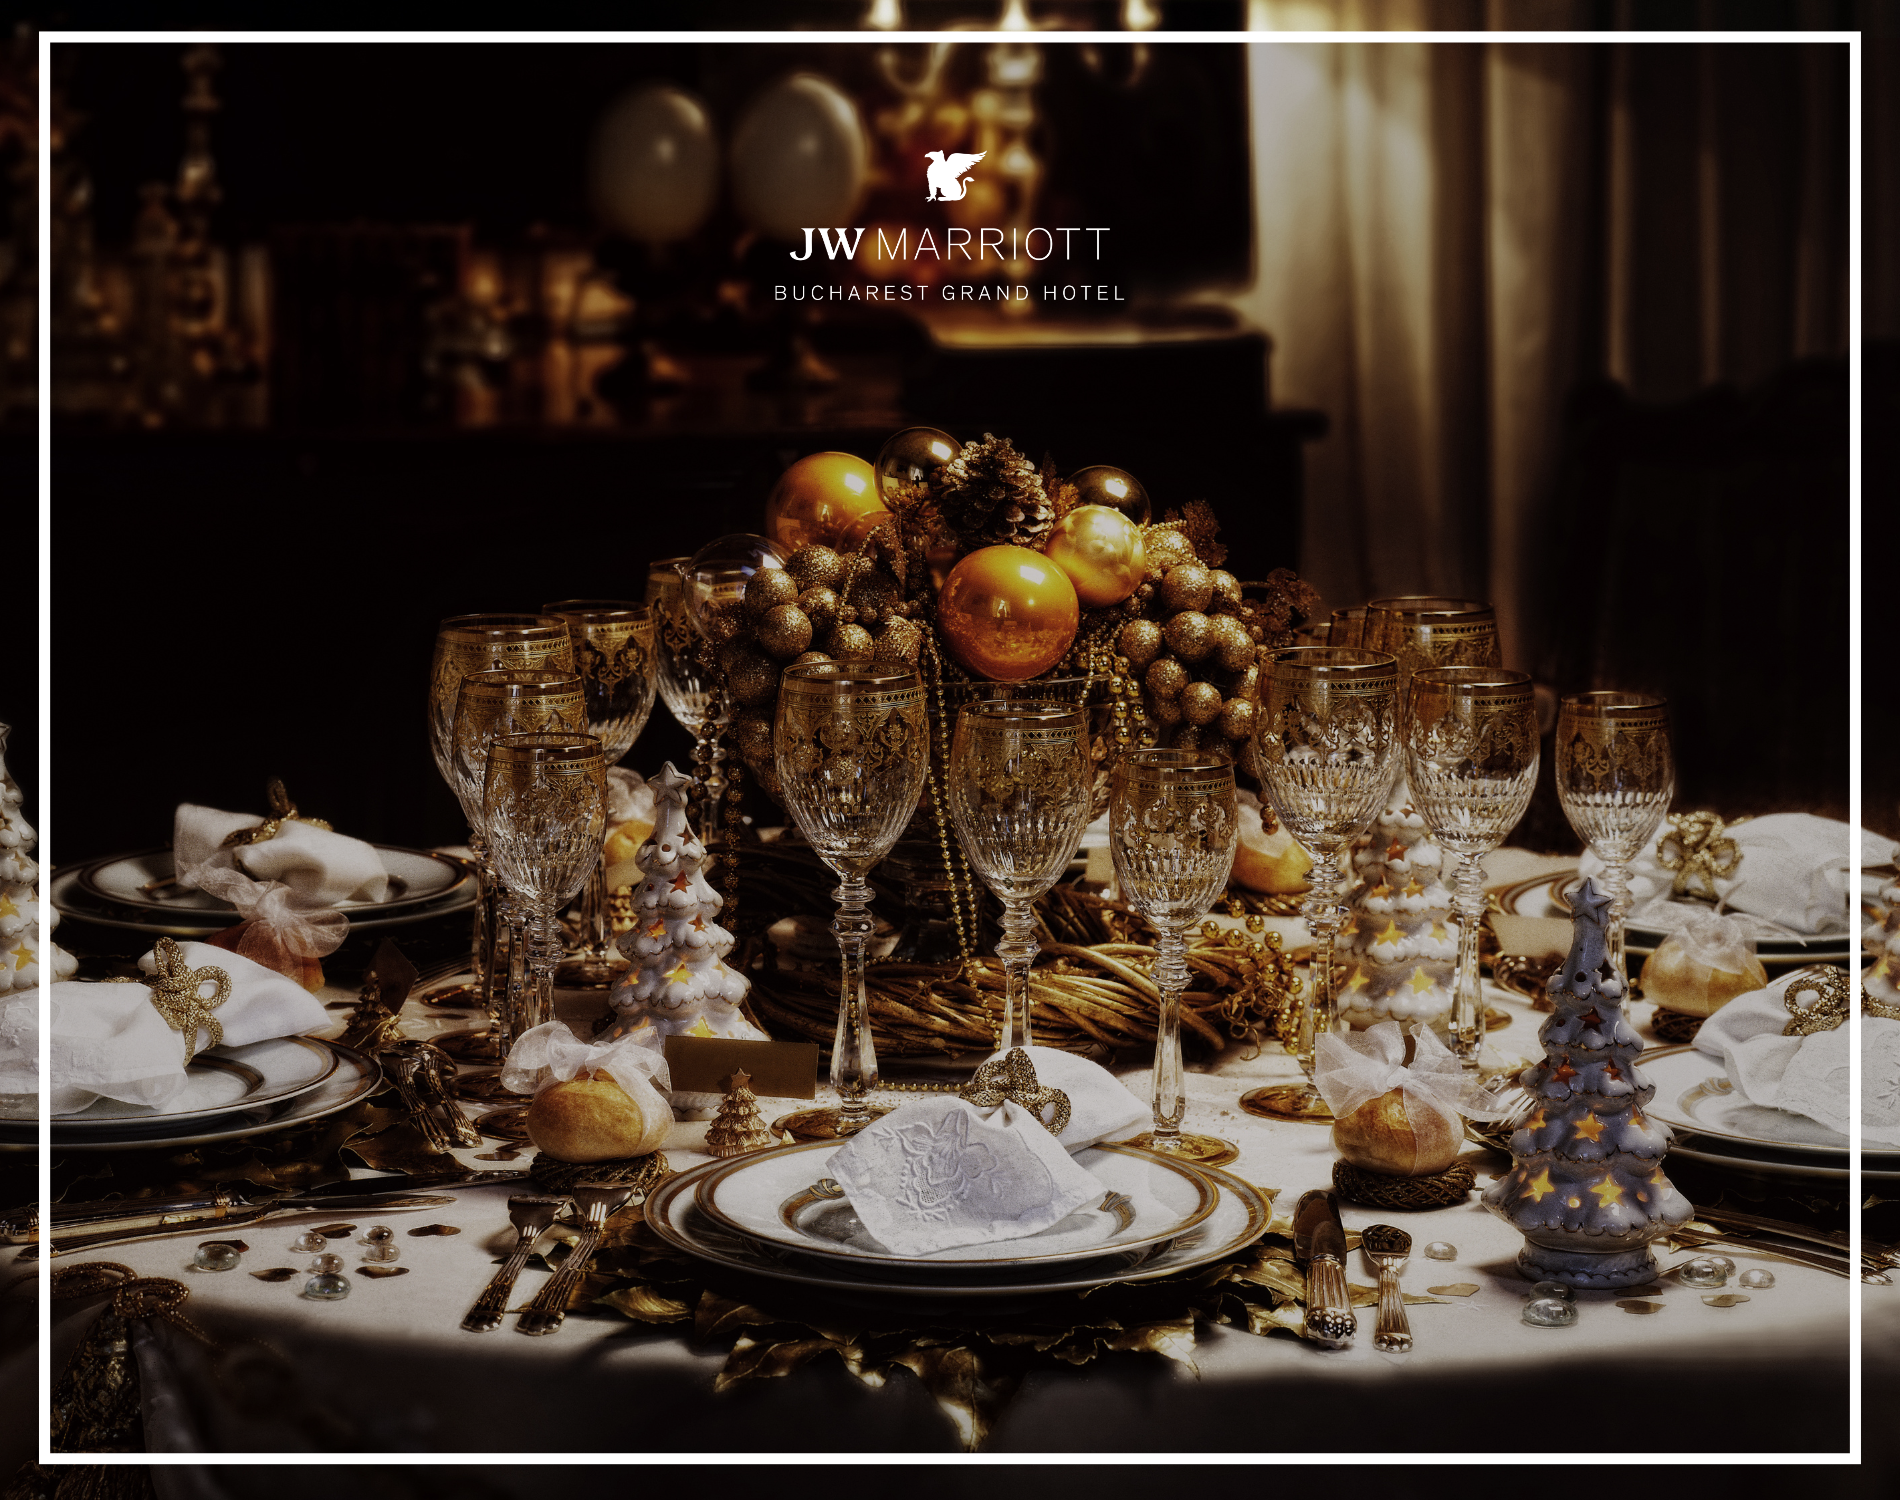 Brunch & Cină de Crăciun – un festin regal la JW Marriott Bucharest Grand Hotel